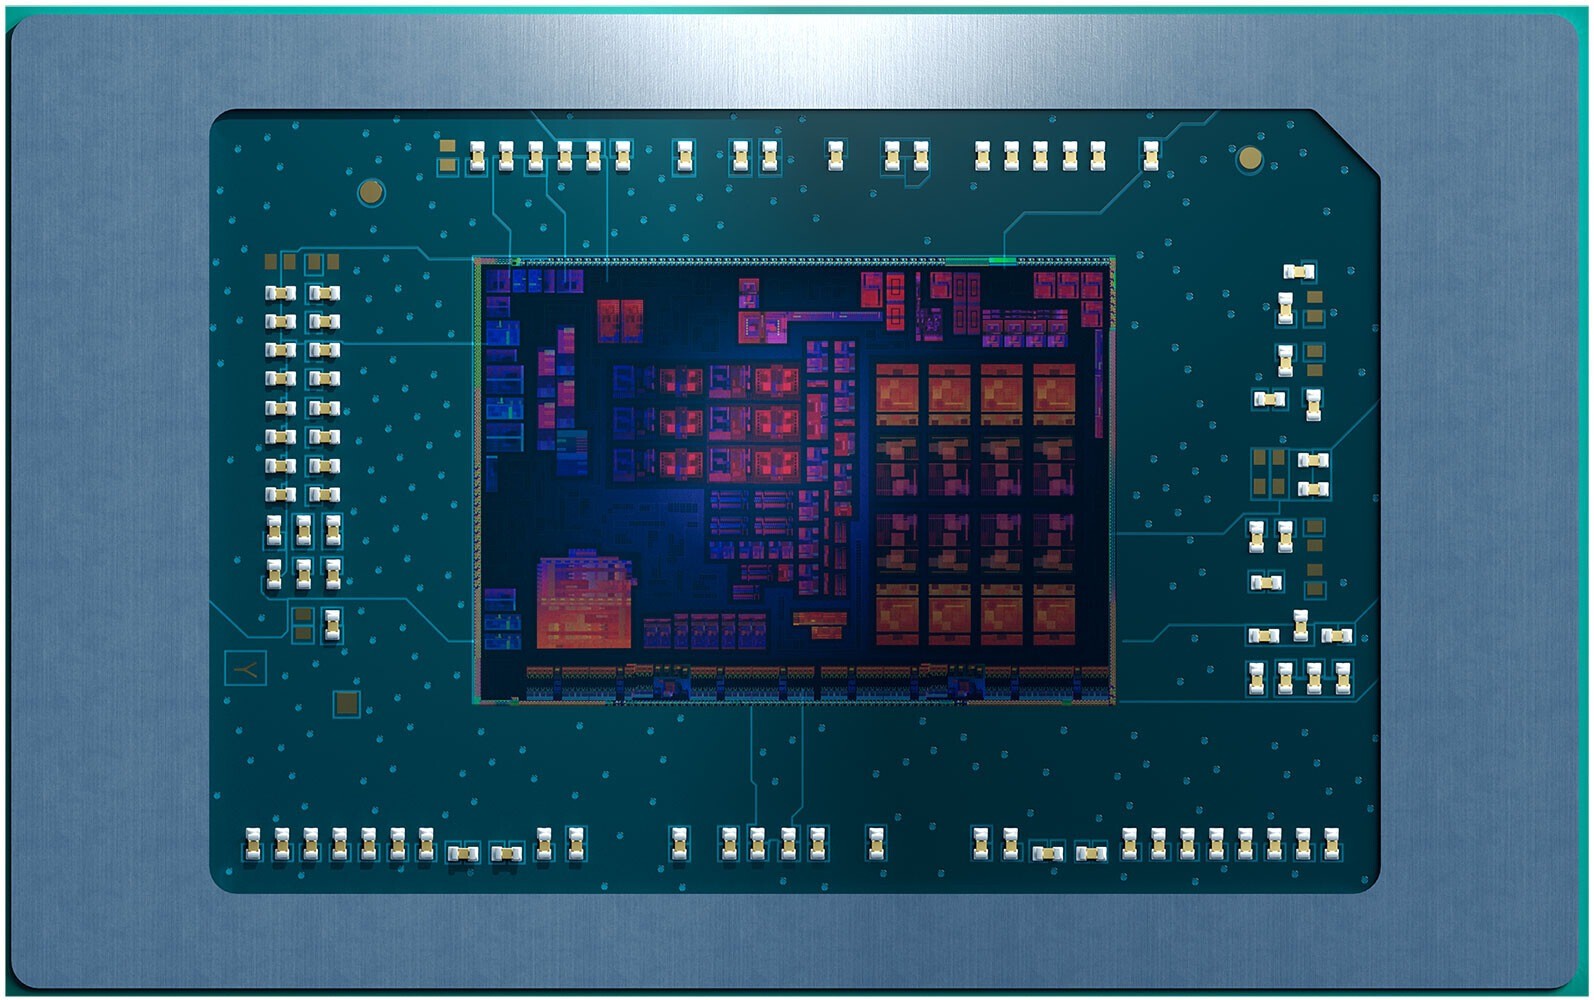 AMD将锐龙7040HS系列移动CPU推迟到4月上市